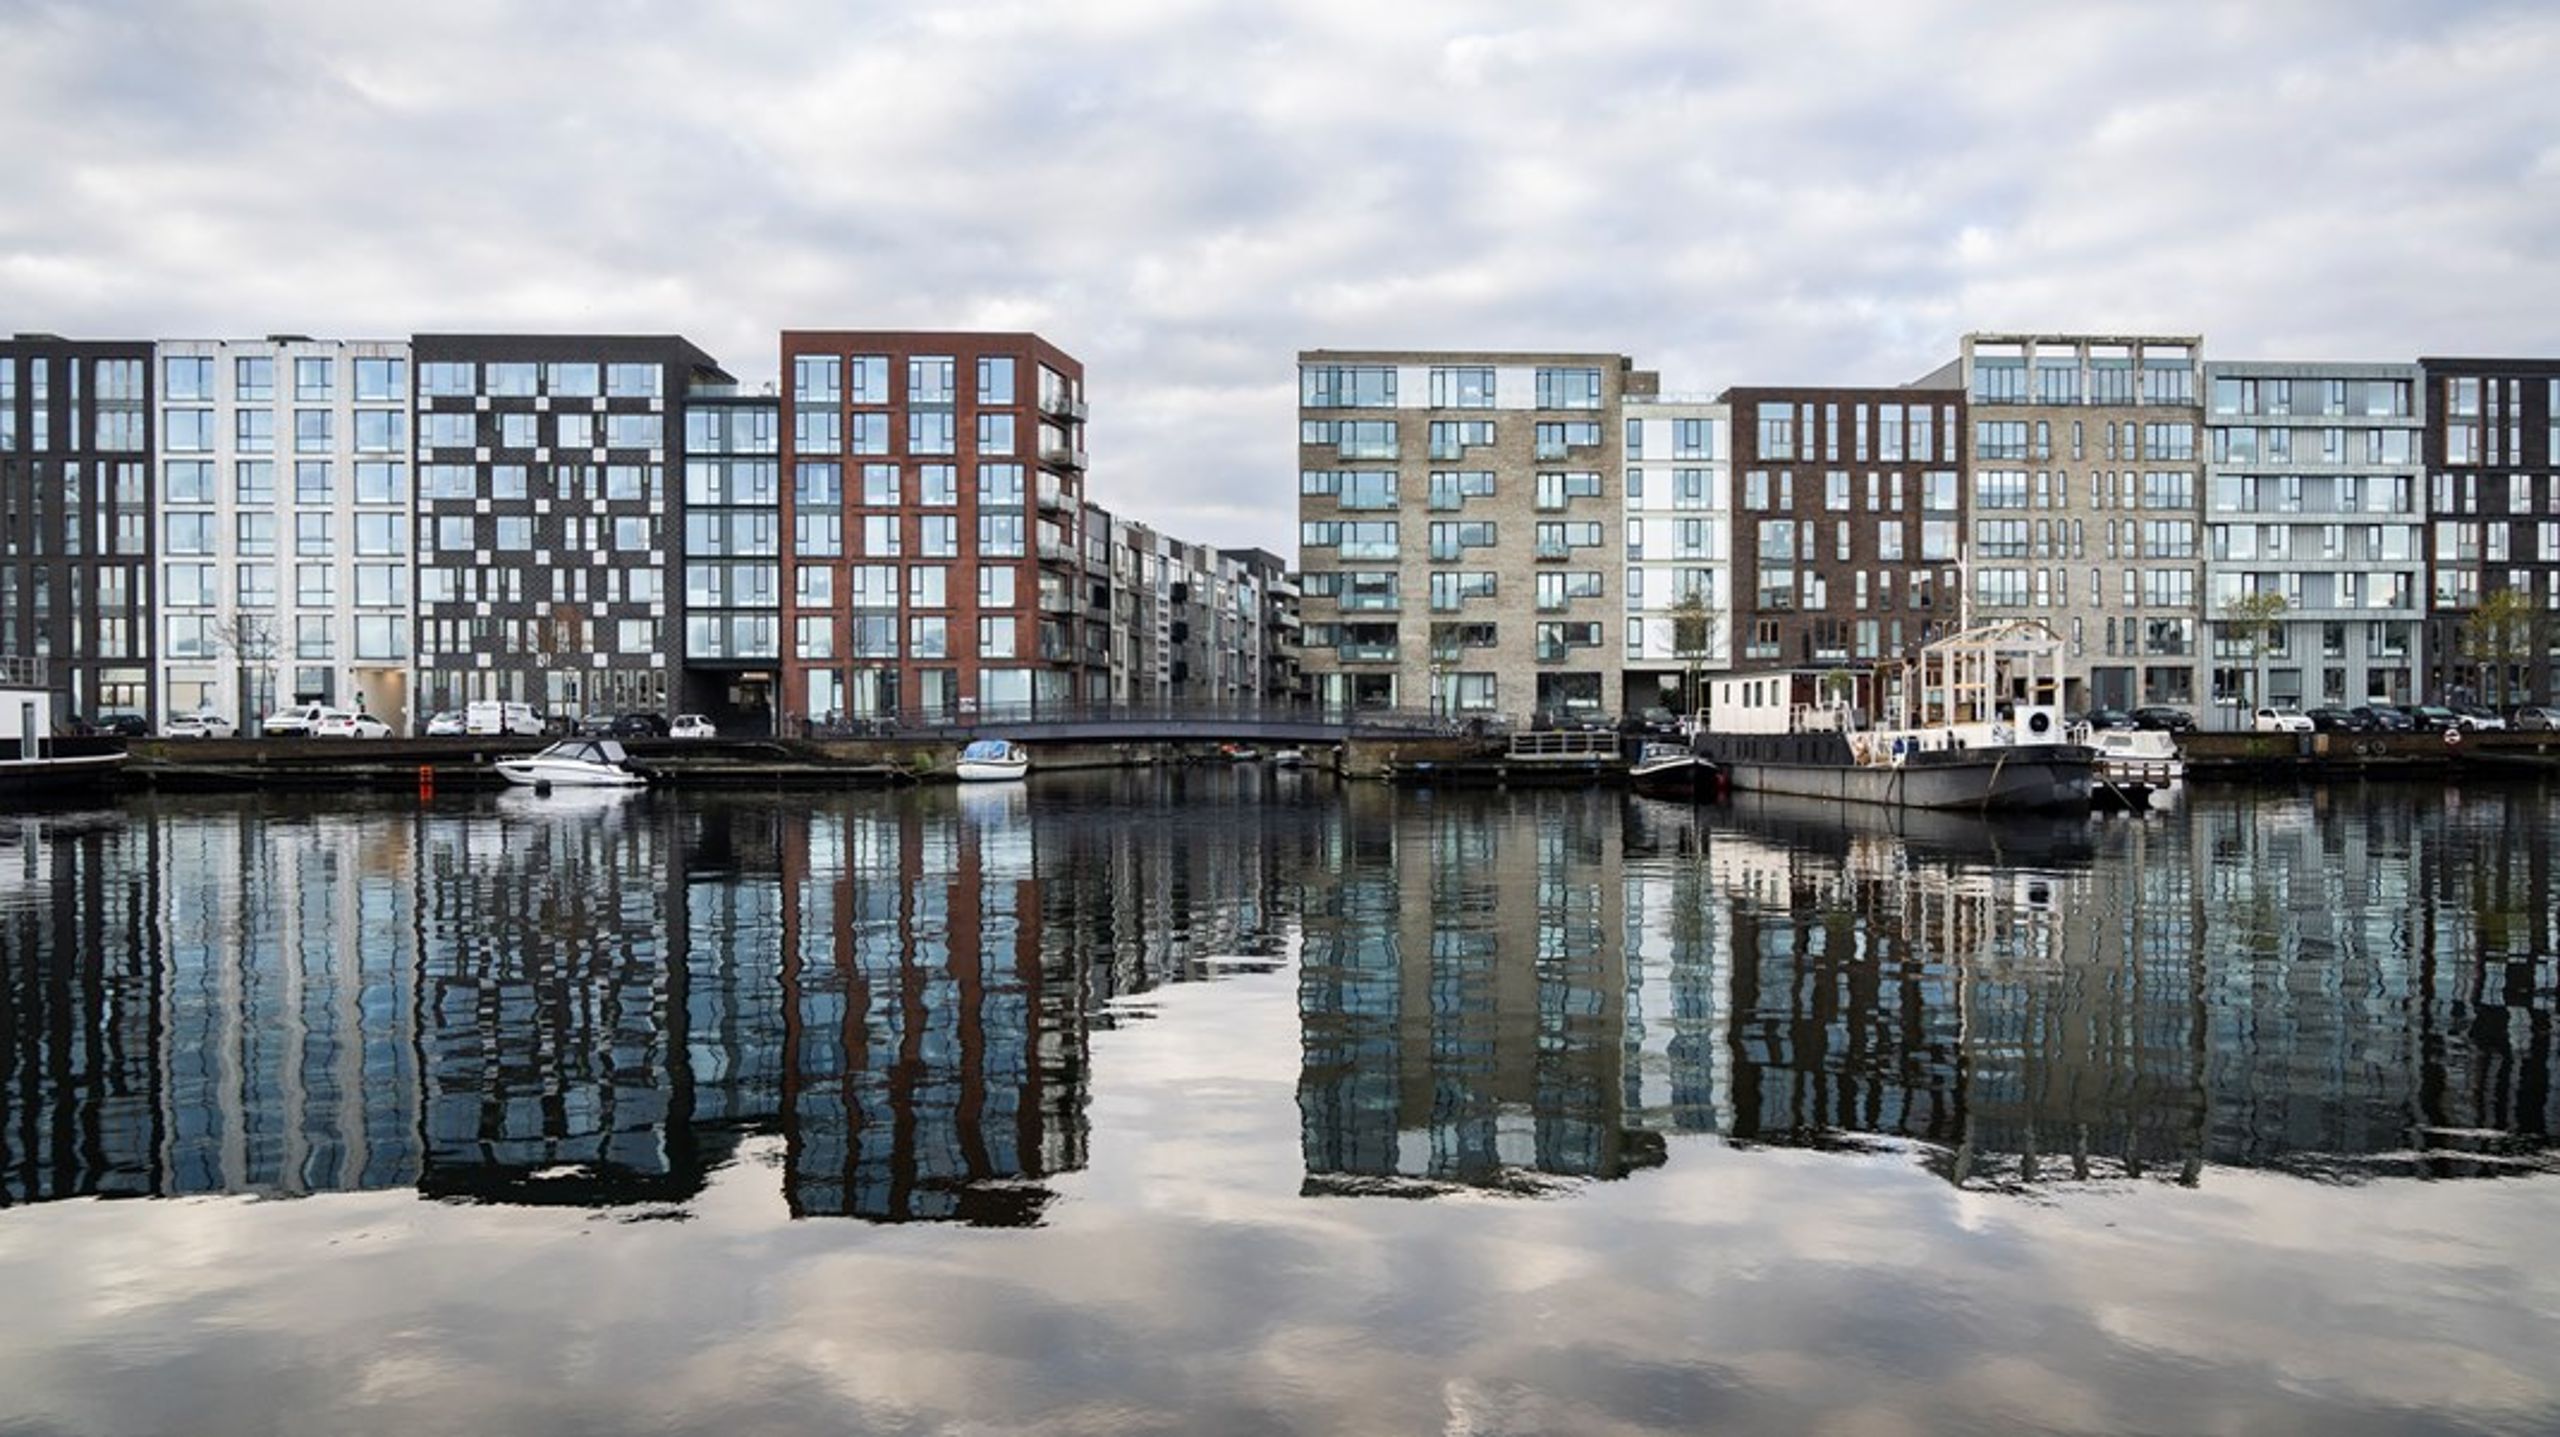 Der skal tænkes nyt, hvis København skal blive den bedste by at bo i.&nbsp;Vi har bygget trist kassebyggeri langs hele havnenstore dele af København.&nbsp;<span>Det må stoppe.&nbsp;Tænk på, hvad der kunne være skabt på de områder med den enestående beliggenhed ved vandet, skriver Jep Loft.</span>